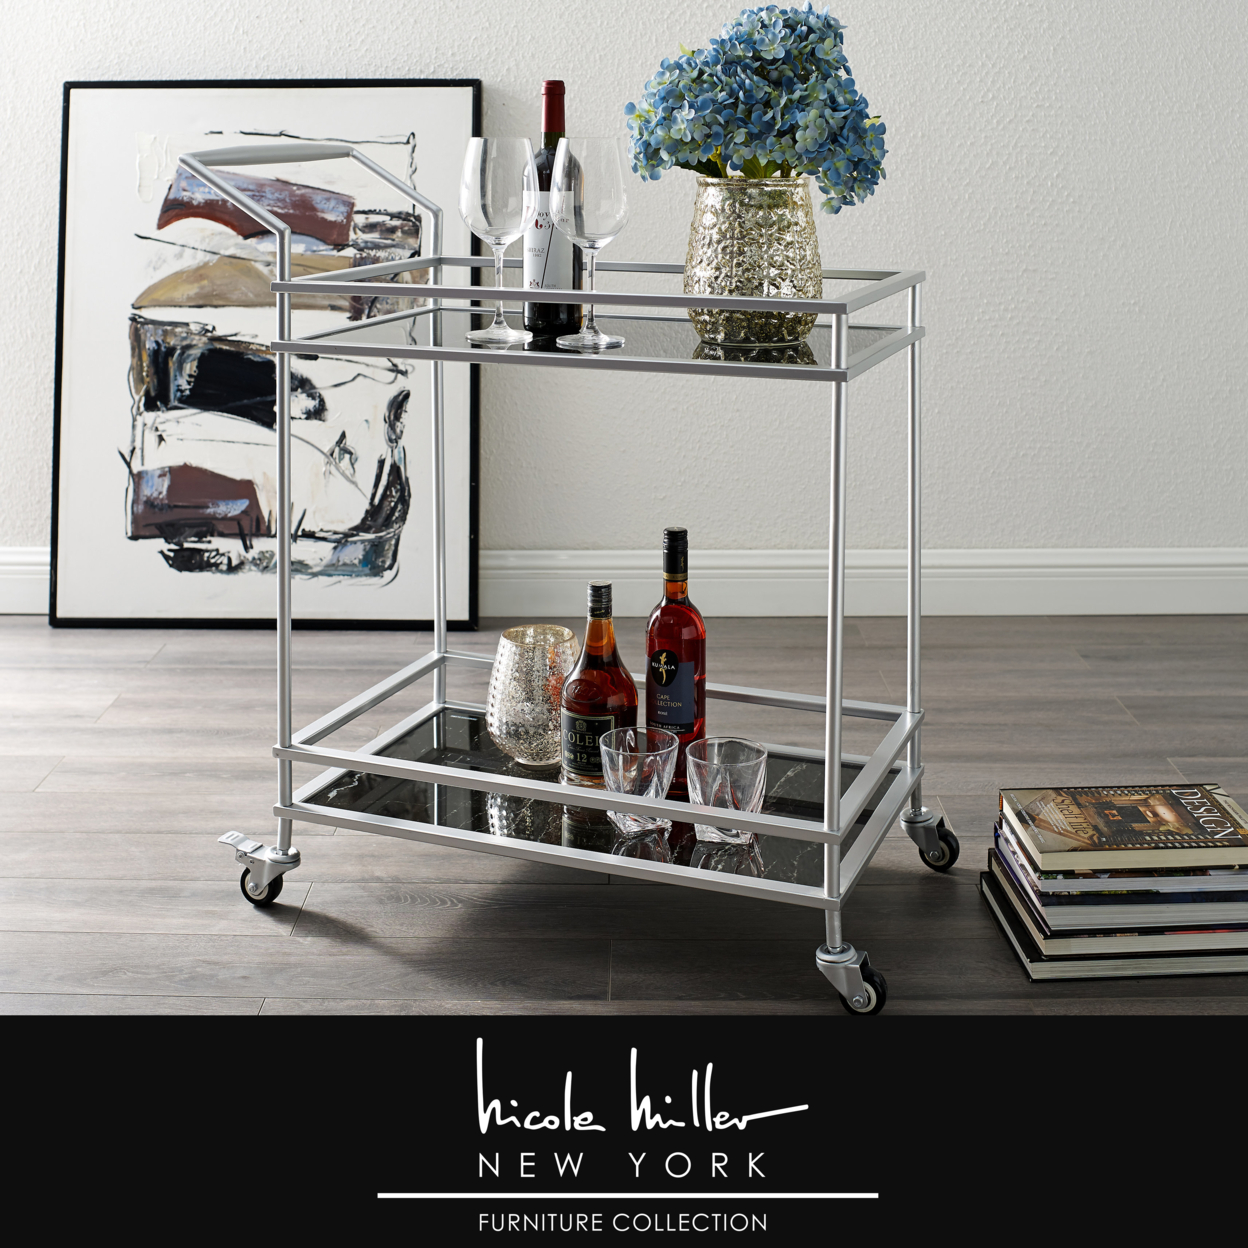 Amaya Serving Bar Cart-2 Storage Shelves-Casters- 2 Locking-Modern Matte Frame-By Nicole Miller - Walnut/ Gold